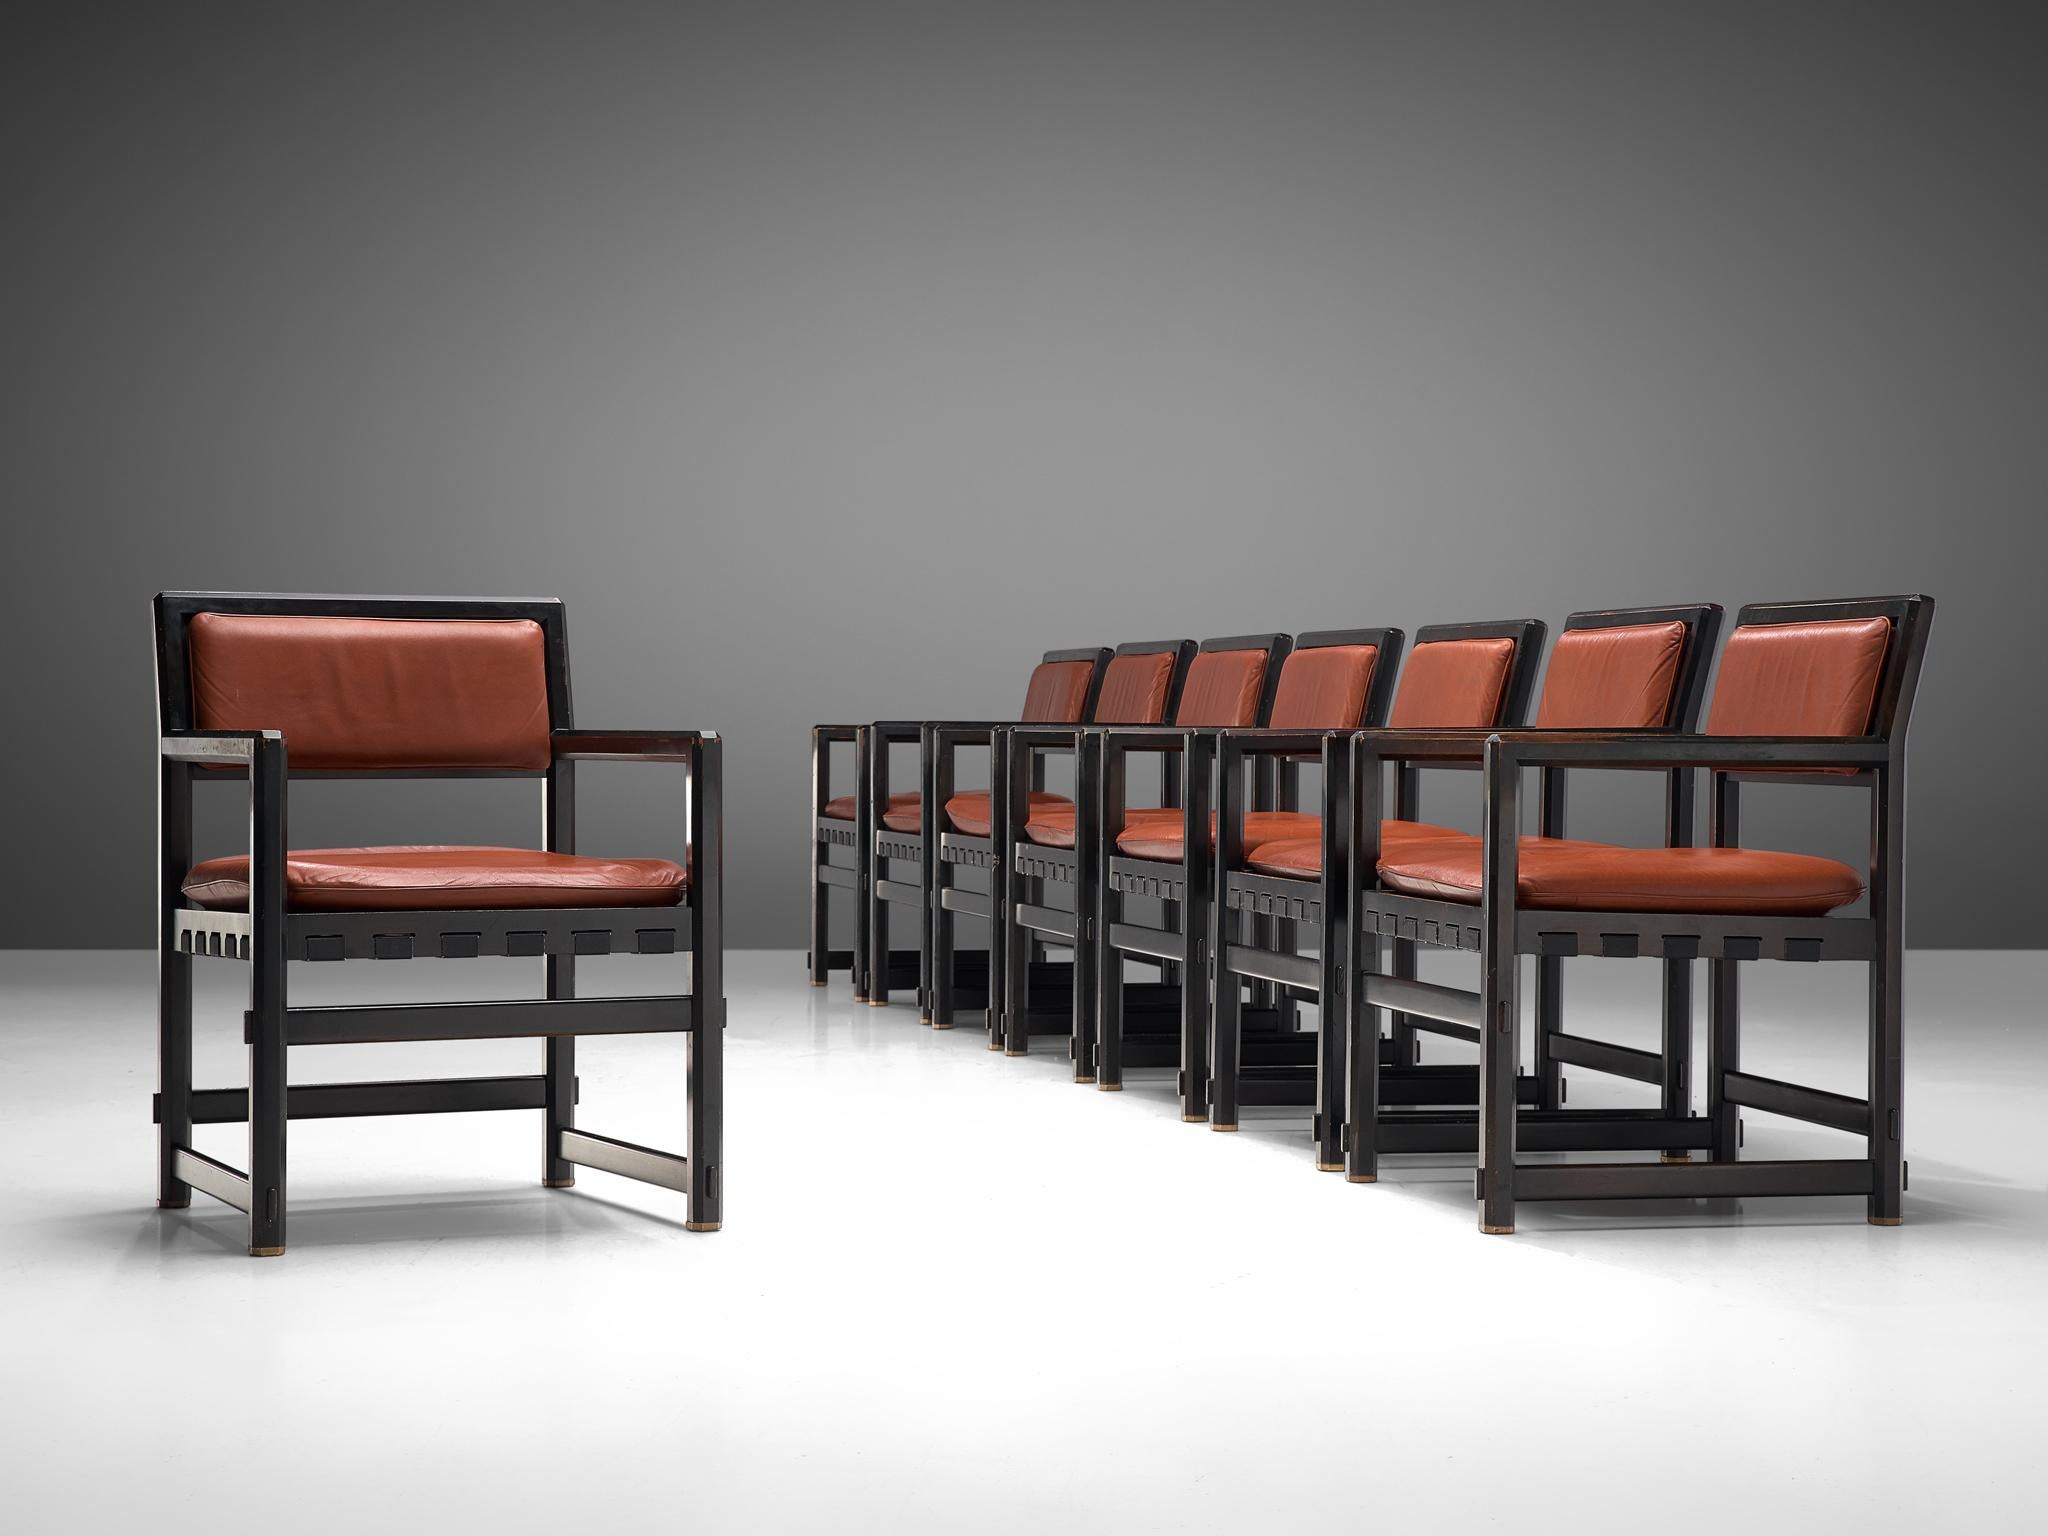 Edward Wormley pour Dunbar par Mobilier Universel, ensemble de huit fauteuils, modèle '5762', bois noir laqué, cuir brun rouge, Belgique, design 1957

Ces fauteuils ont été conçus par Edward Wormley pour la société de meubles Dunbar en 1957 et